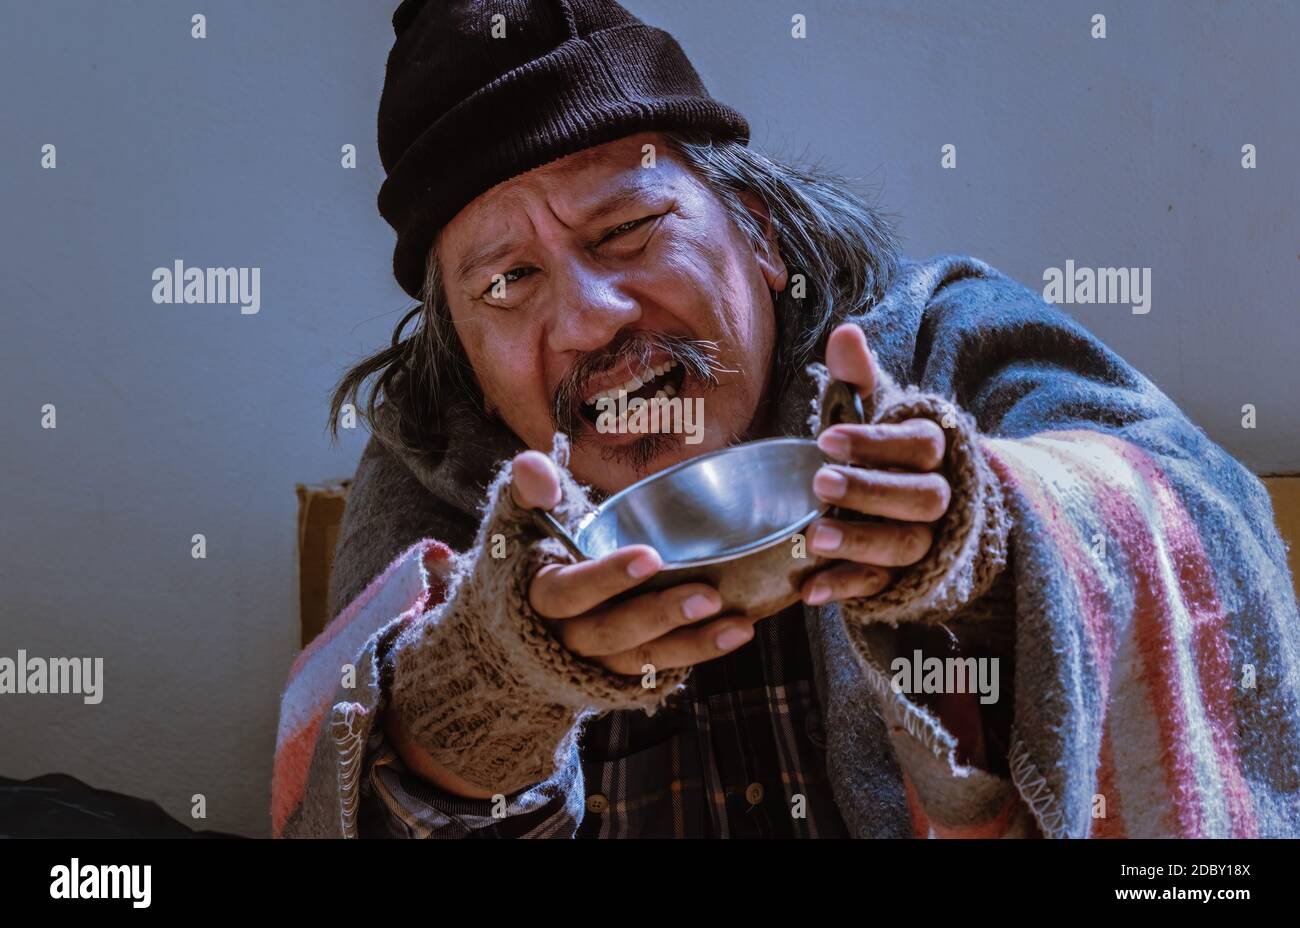 Ein erbärmlicher Obdachloser mit unglücklichem Blick bittet um Hilfe, indem er mit einer Schüssel bettelt. Stockfoto